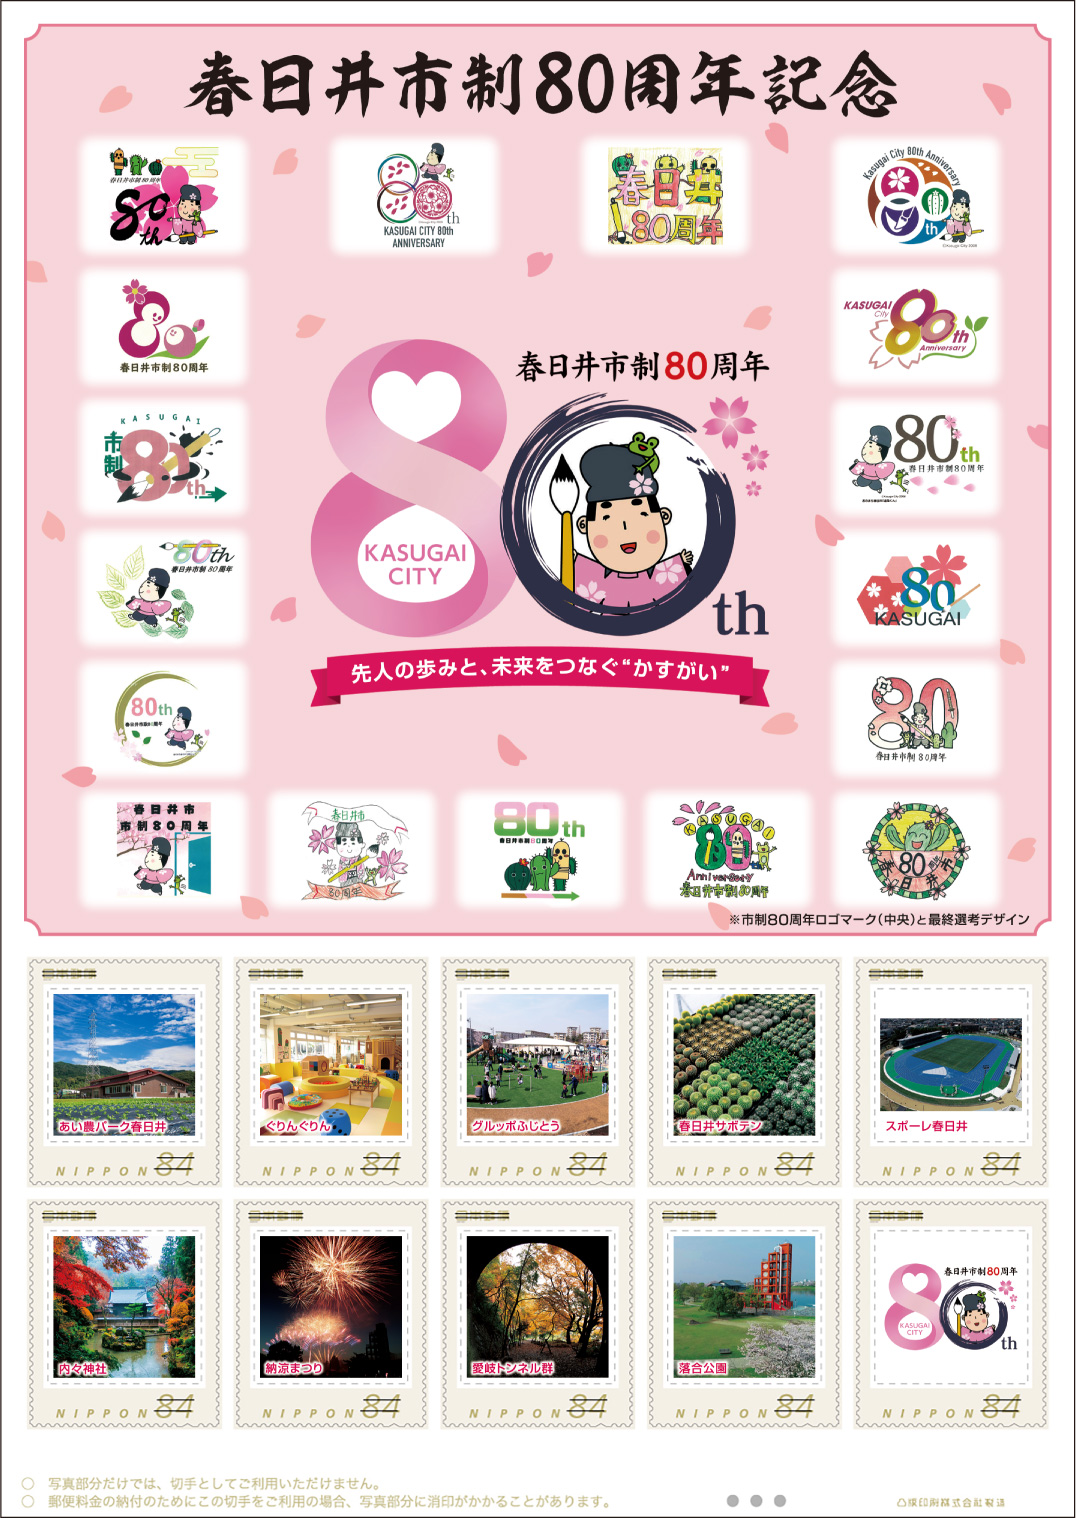 オリジナル フレーム切手「春日井市制80周年記念」の販売開始